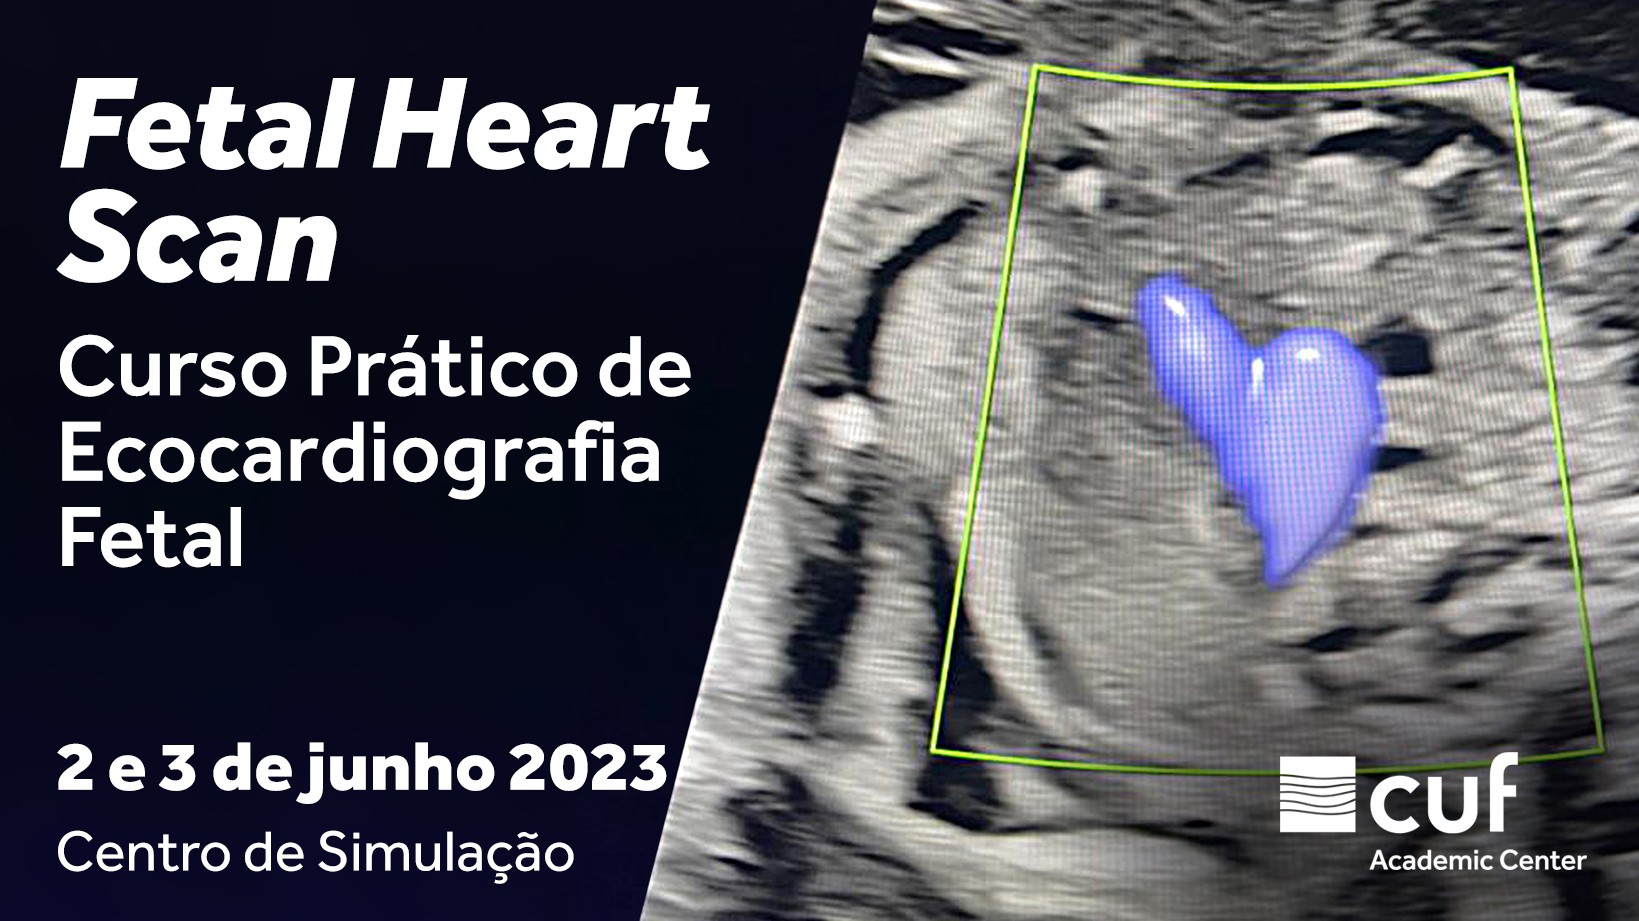 Fetal Heart Scan - Curso Prático de Ecocardiografia Fetal